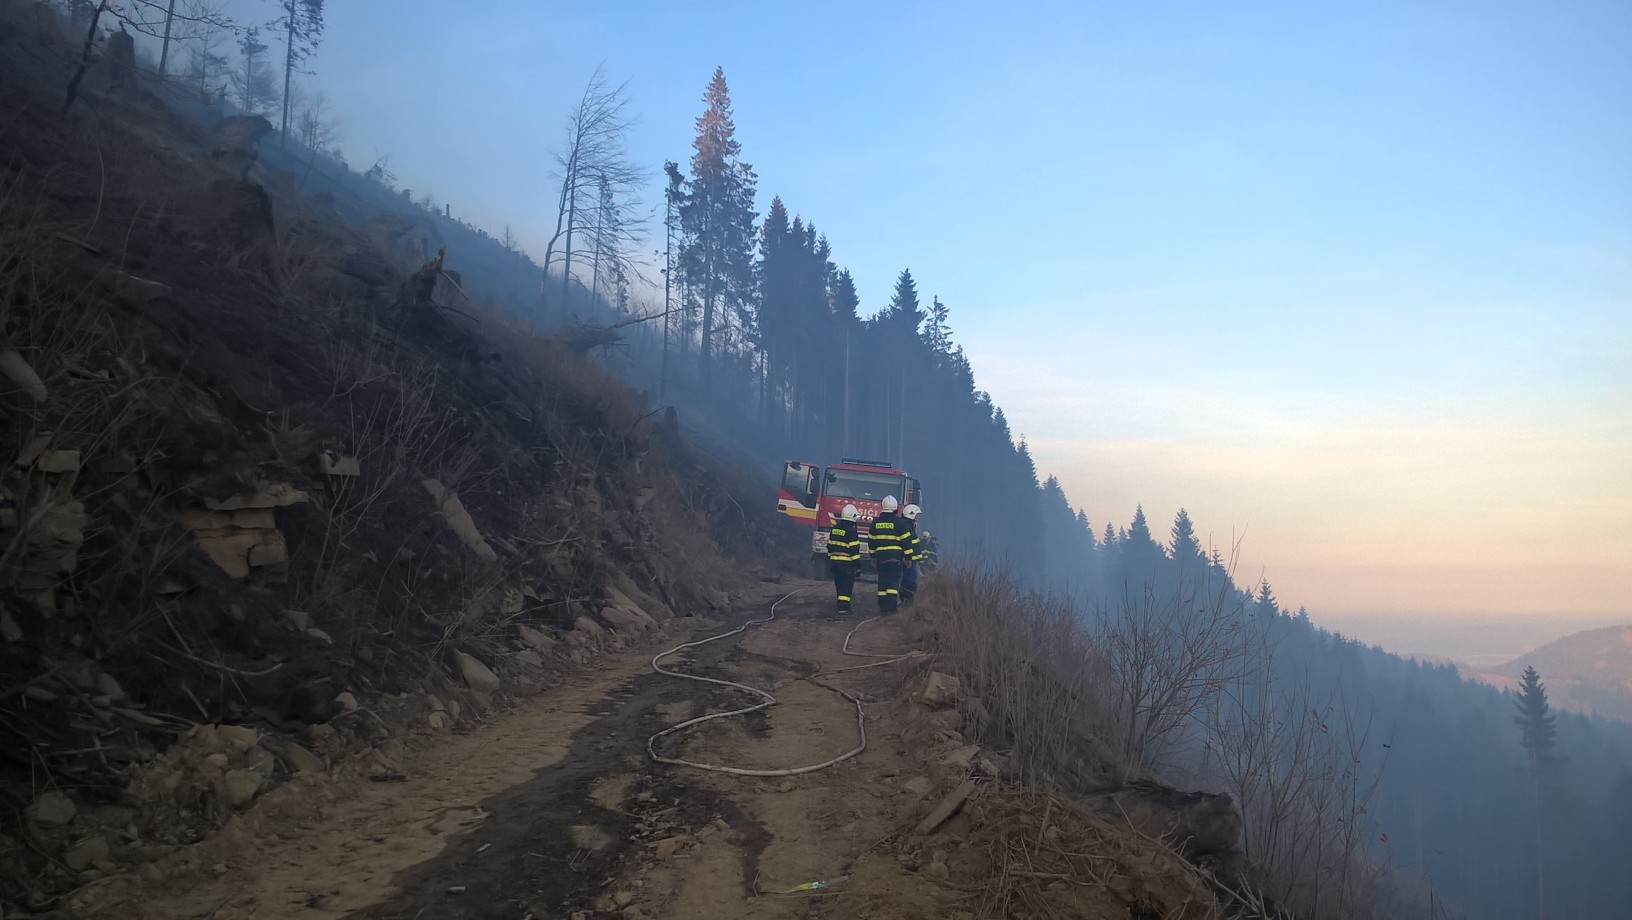 01 - Hasenie požiaru na vrchu Ihla je v spolupráci s dobrovoľnými hasičmi veľmi efektívne